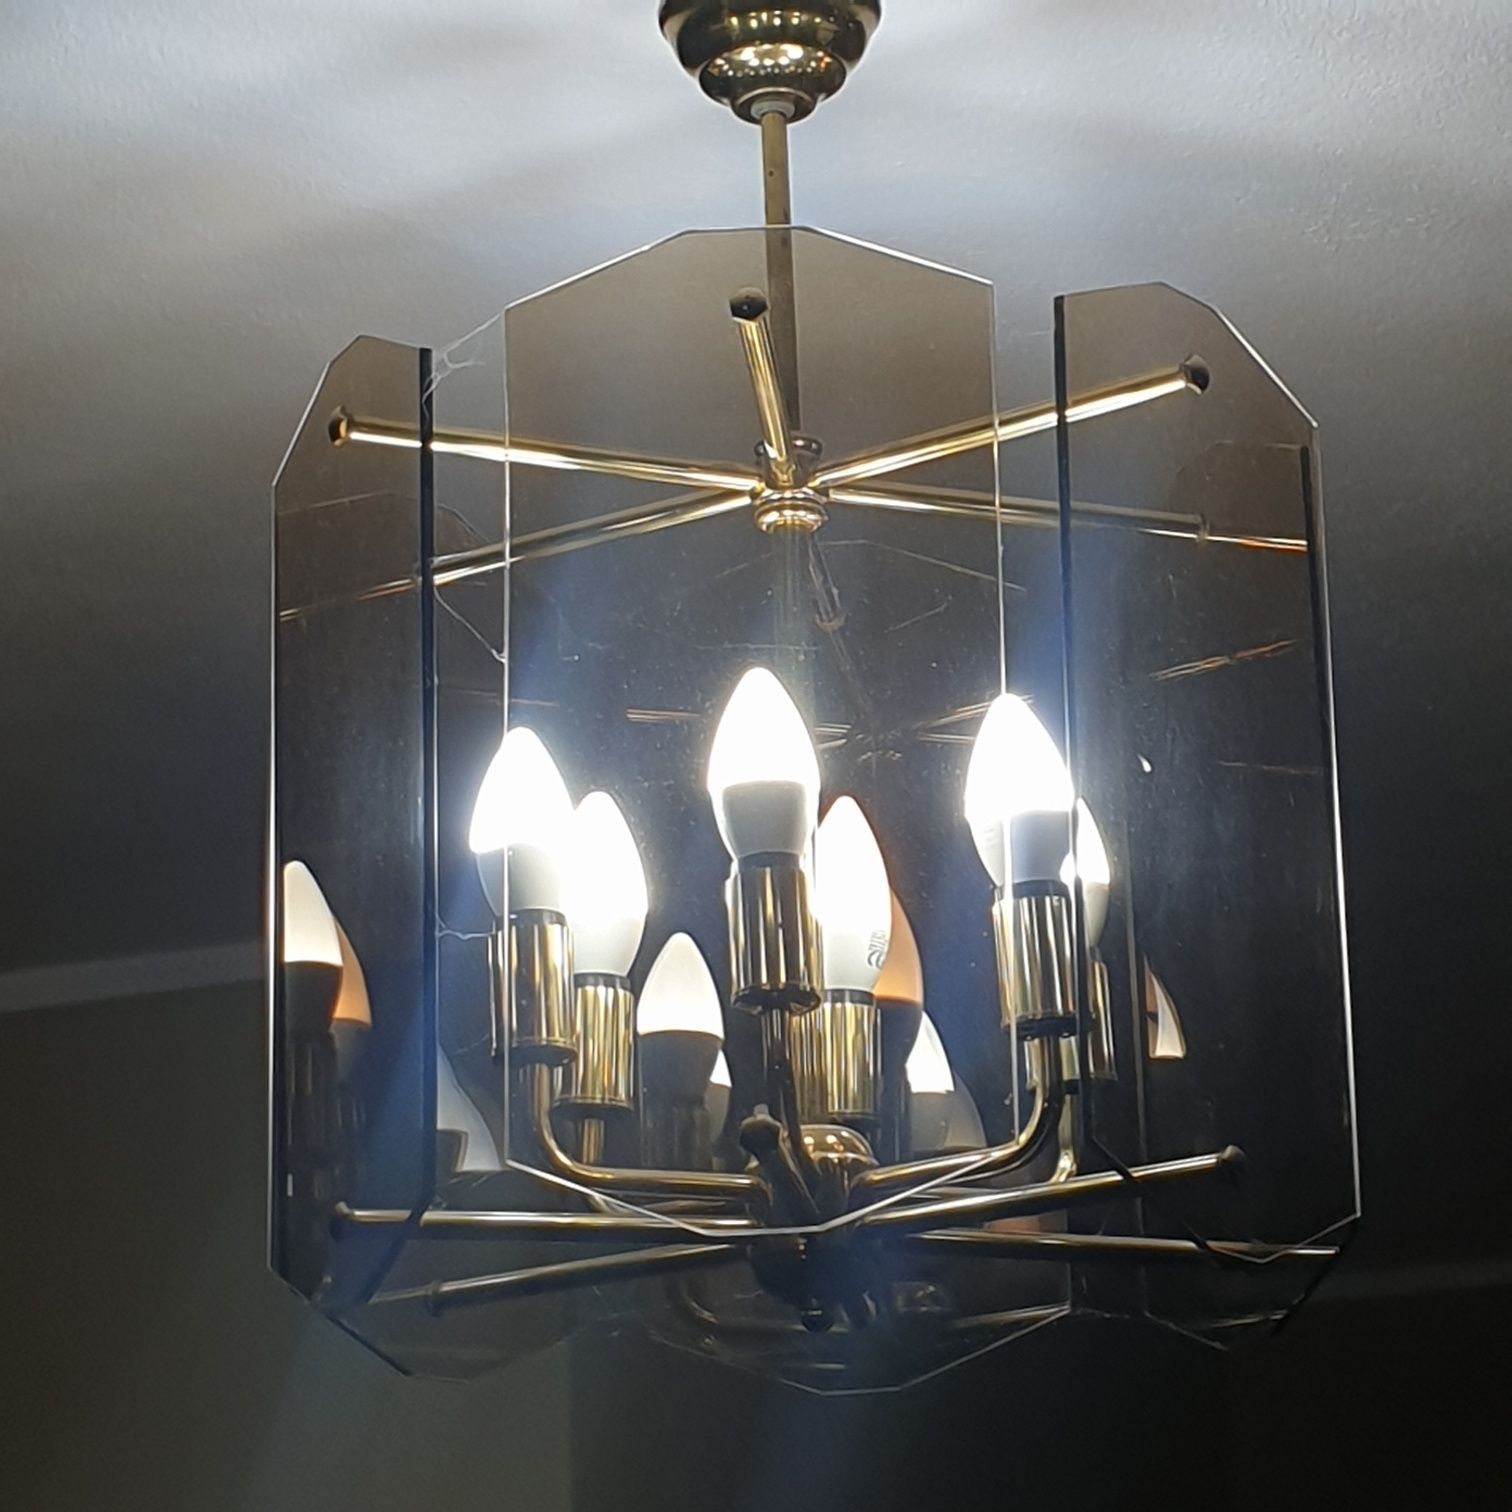 Żyrandol Lampa sufitowa szklana Salon klasyczne wzornictwo